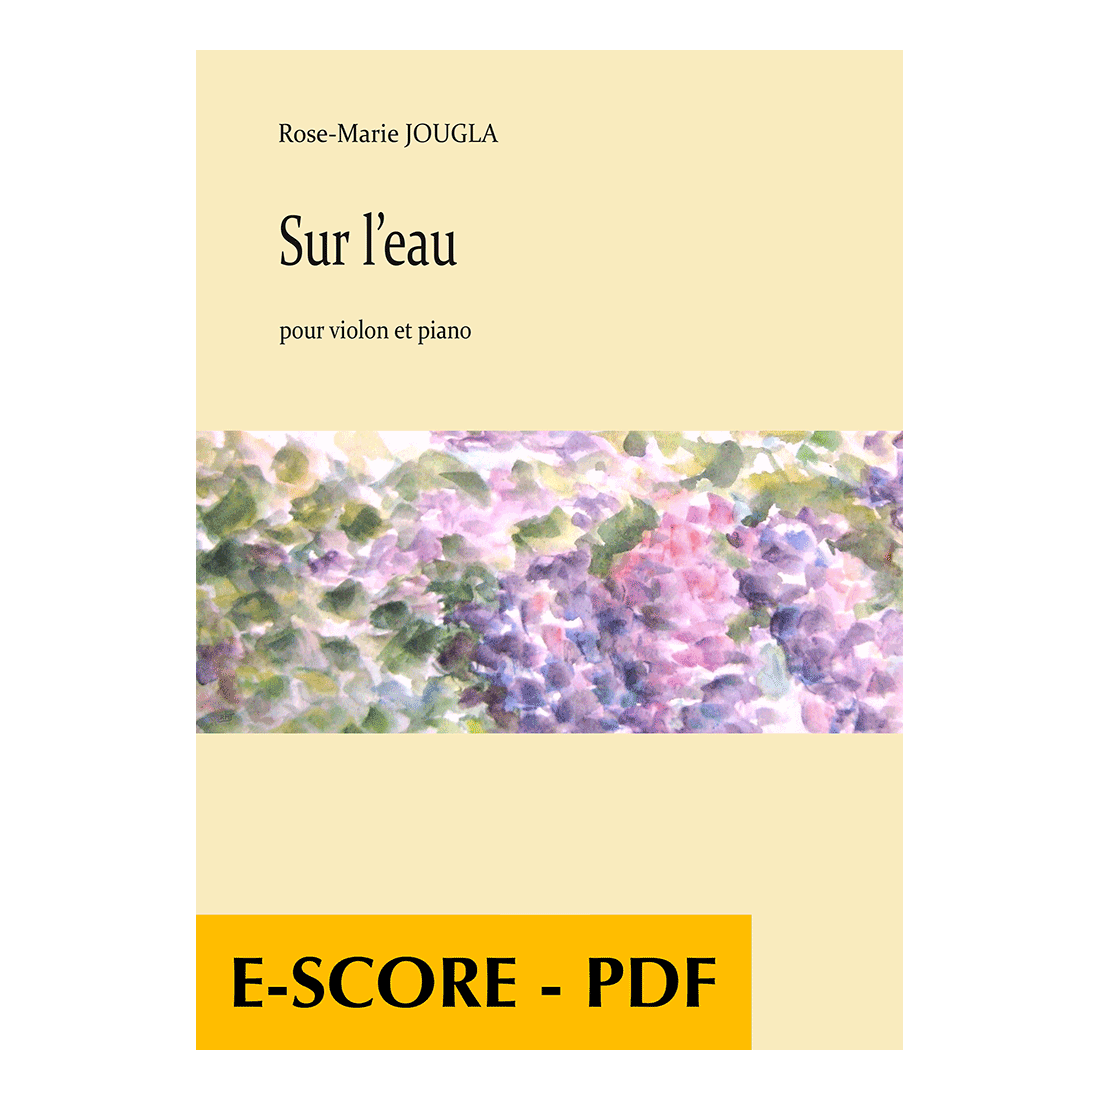 Sur l'eau für Violine und Klavier - E-score PDF